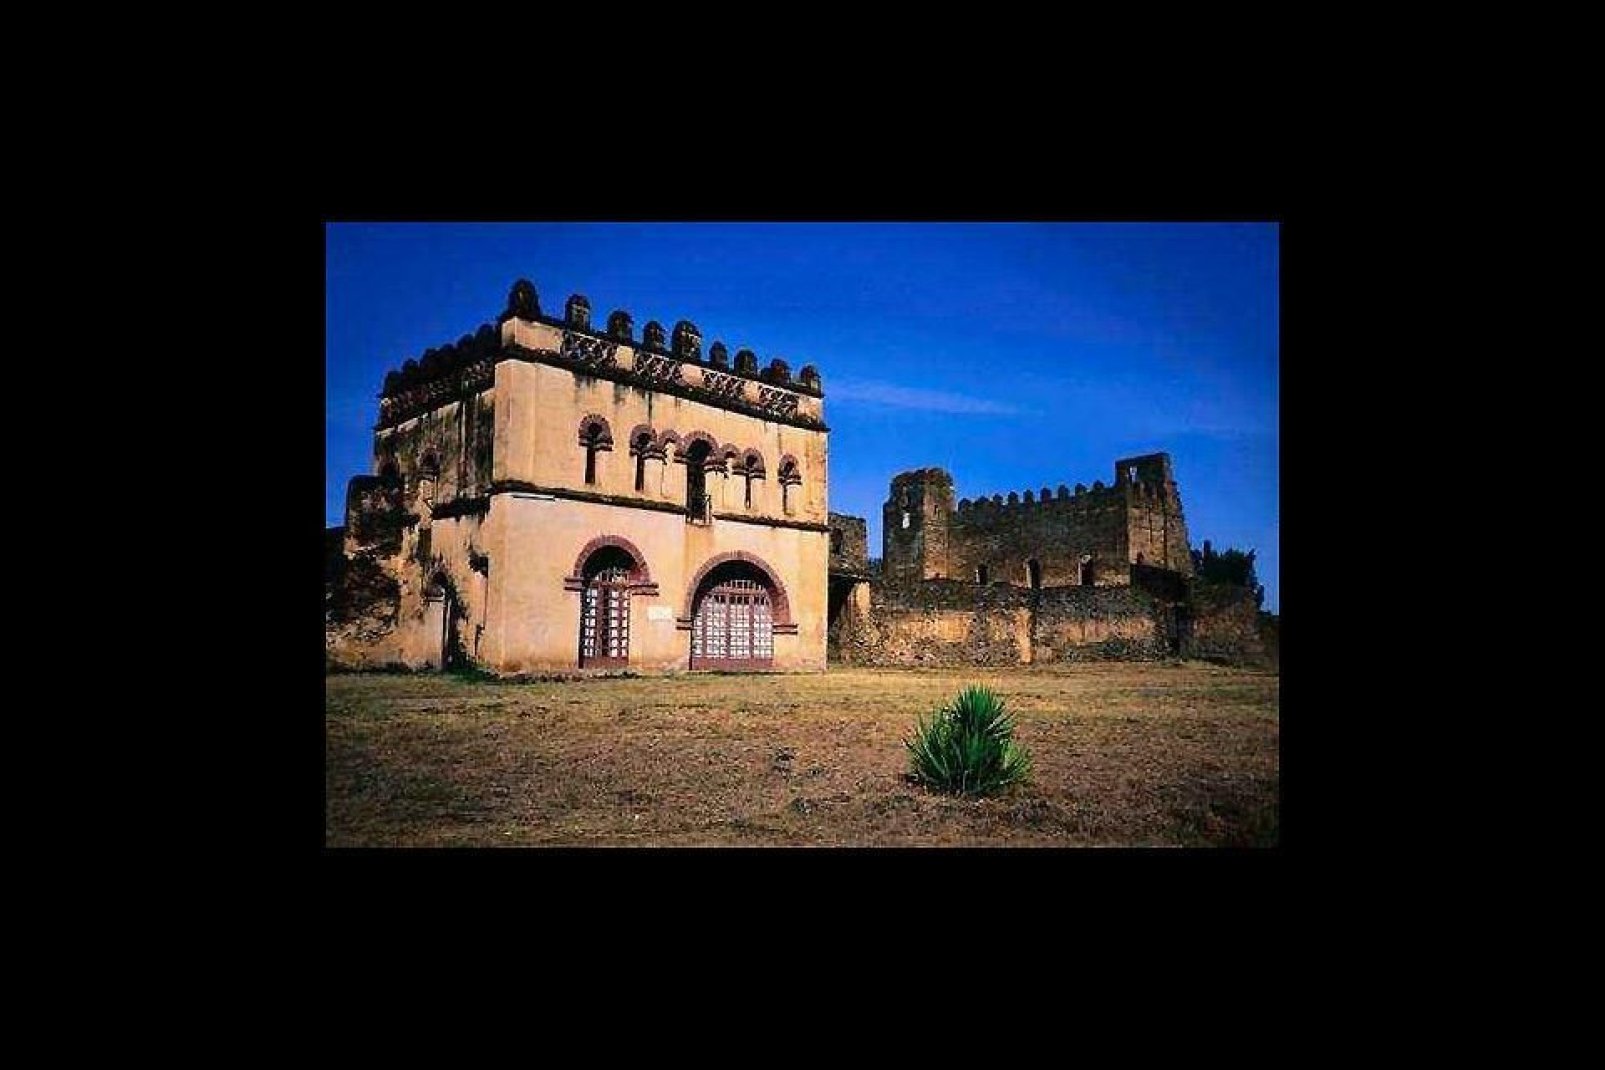 Gondar war 200 Jahre lang die Hauptstadt eines ausgedehnten Königreichs, von dem heute noch eine befestigte Palastanlage mit sechs Gebäuden übrig geblieben ist.